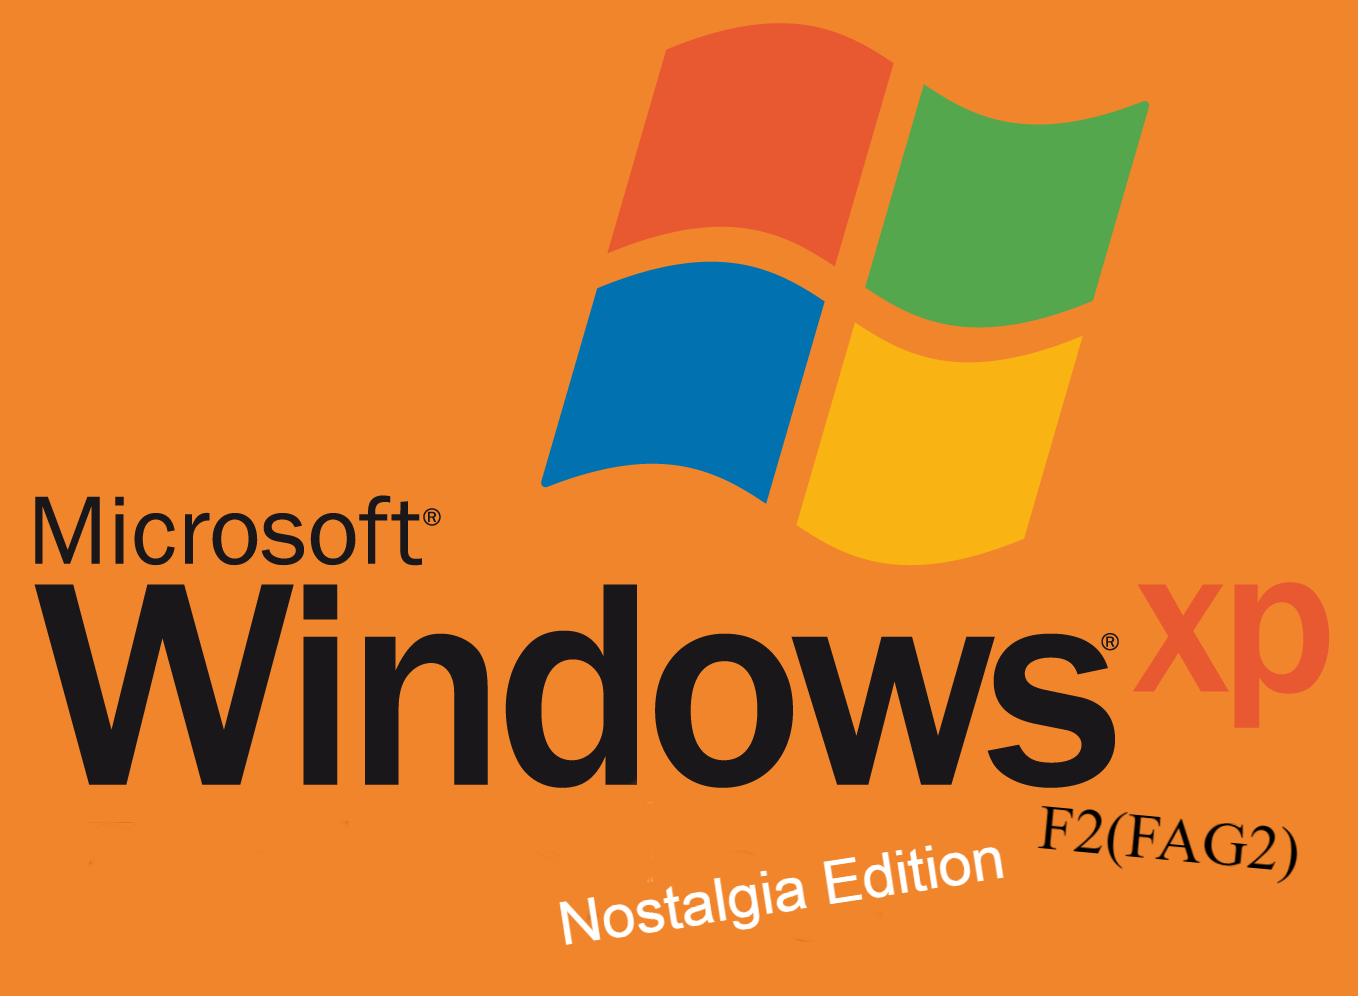 Windows XP Nostalgia Edition